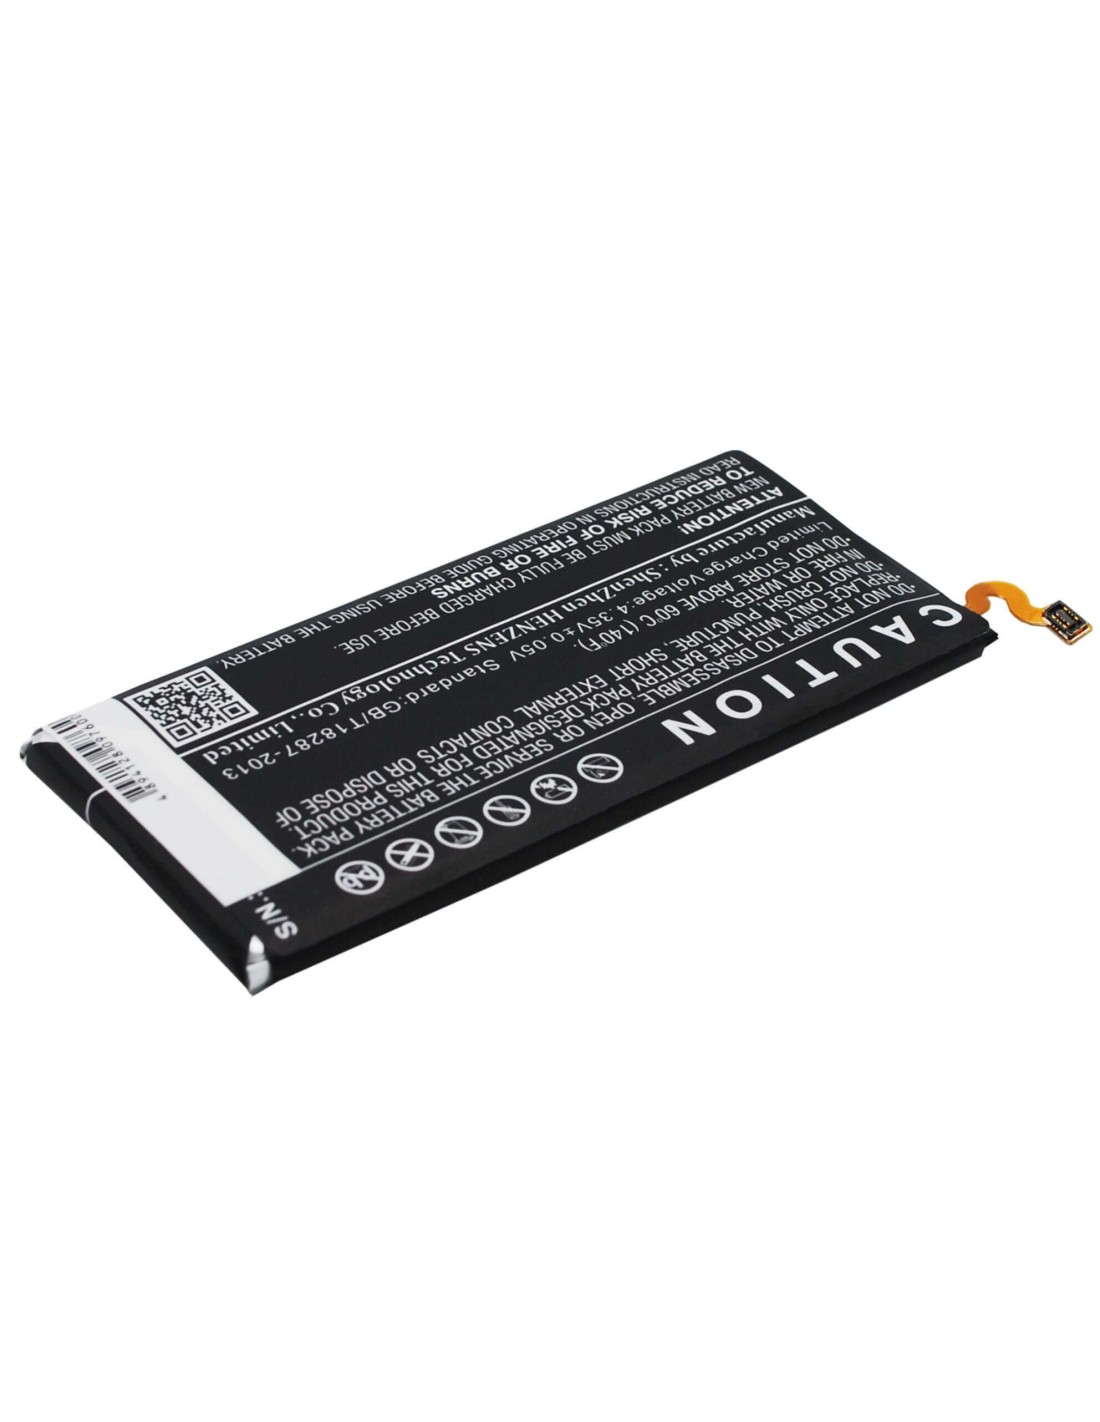 Battery for Samsung Galaxy E5, SM-E500F, SM-E500D 3.8V, 2400mAh - 9.12Wh